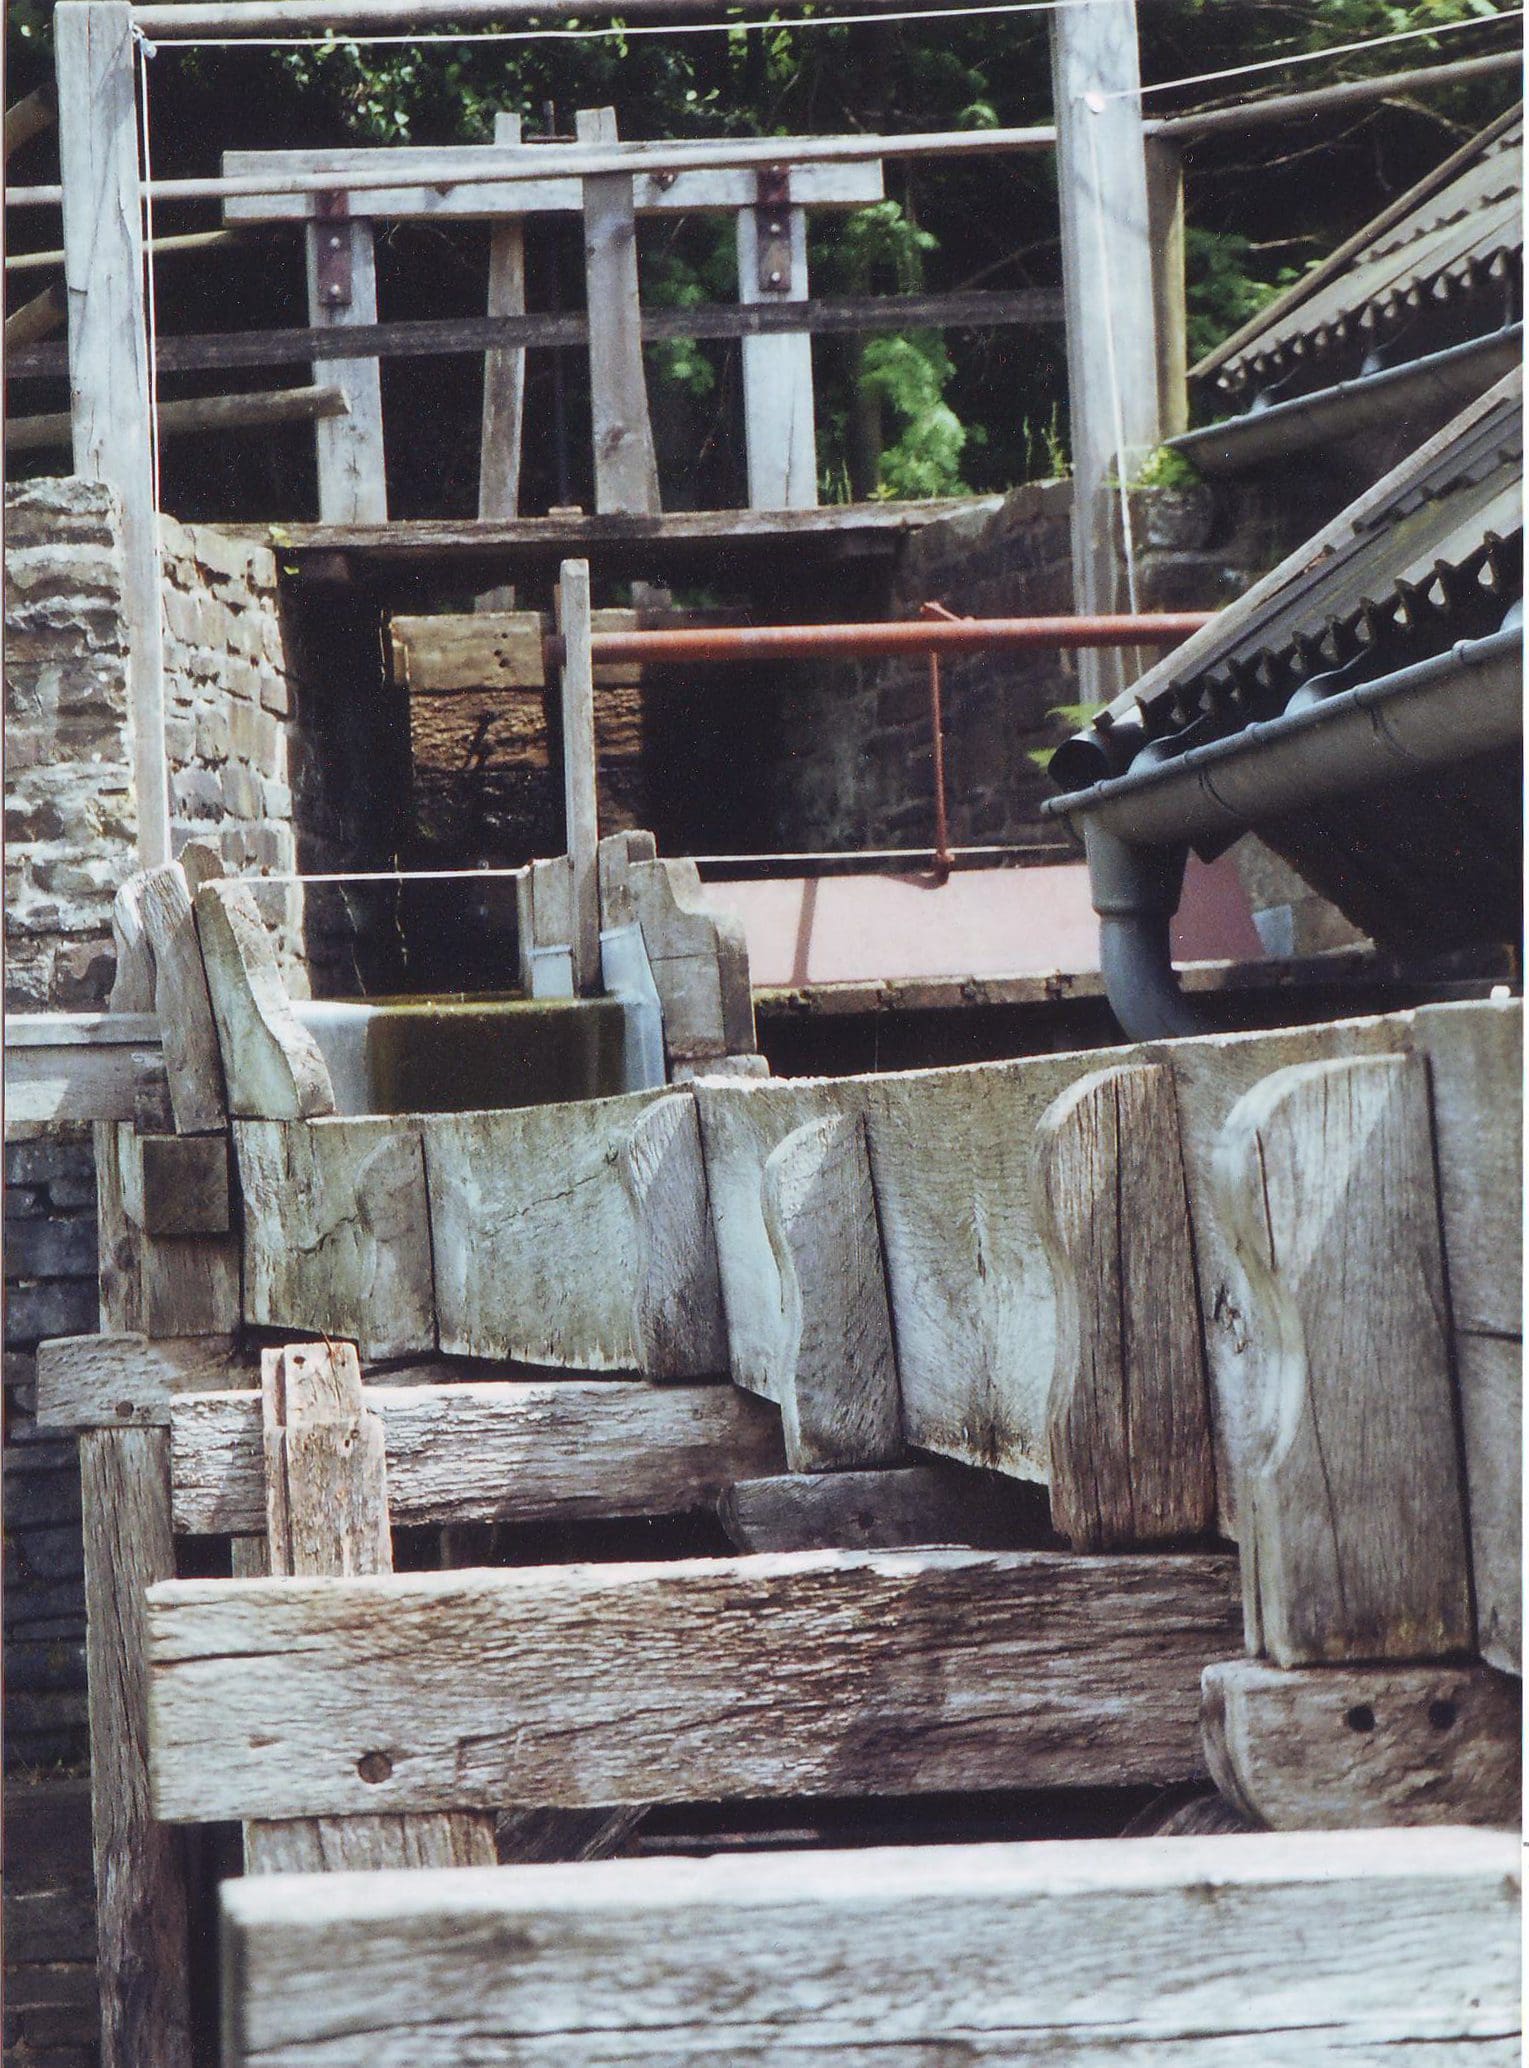 Blick auf die Gerinne der Wendener Mühle im Südsauerland. Die Mühle wird beim Deutschen Mühlentag am Pfingstmontag von 11 bis 18 Uhr im Einsatz sein - Foto M. Löcken 